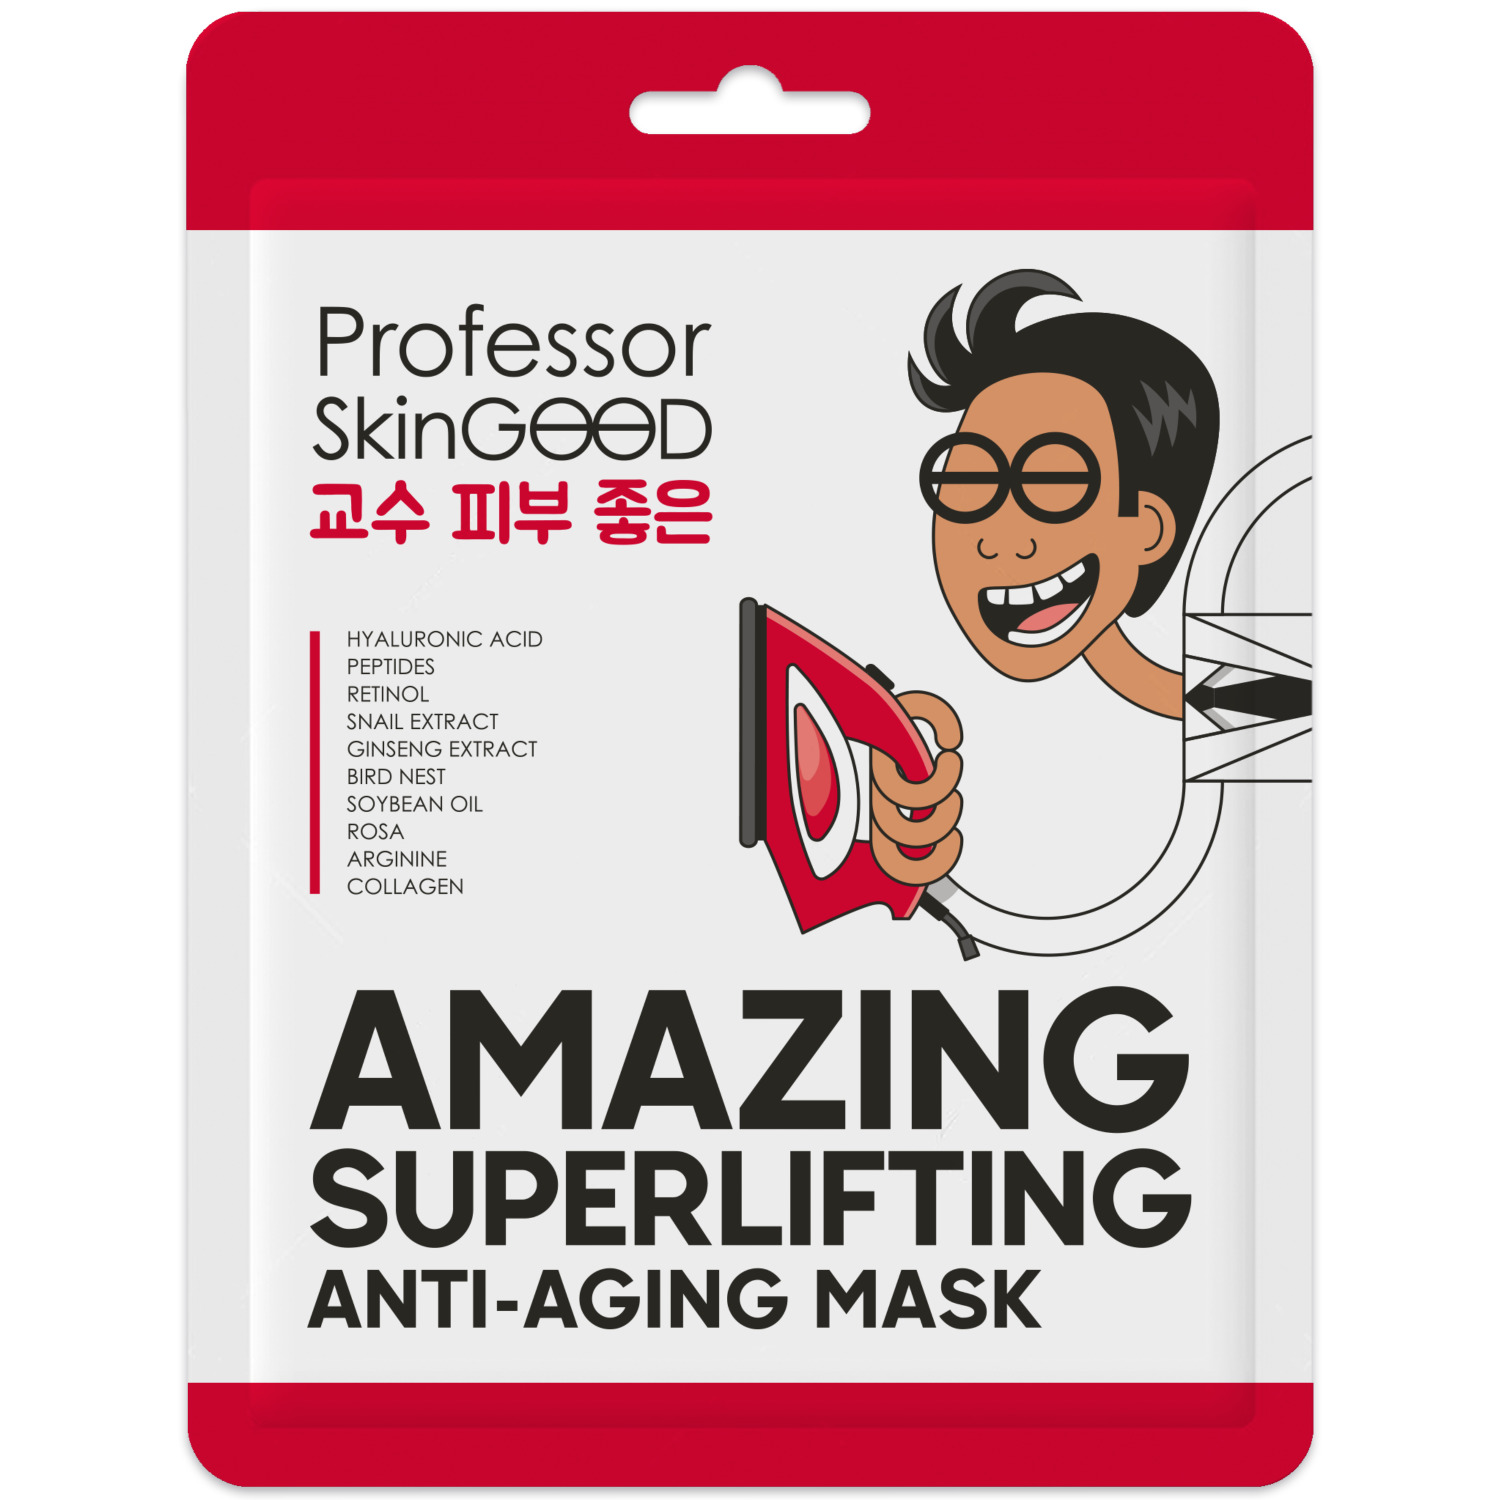 Лифтинг-Маска для лица Professor SkinGood омолаживающая 1 шт увлажняющая маска под глаза с авокадо 7мл увлажняющая маска для лица 7мл саше